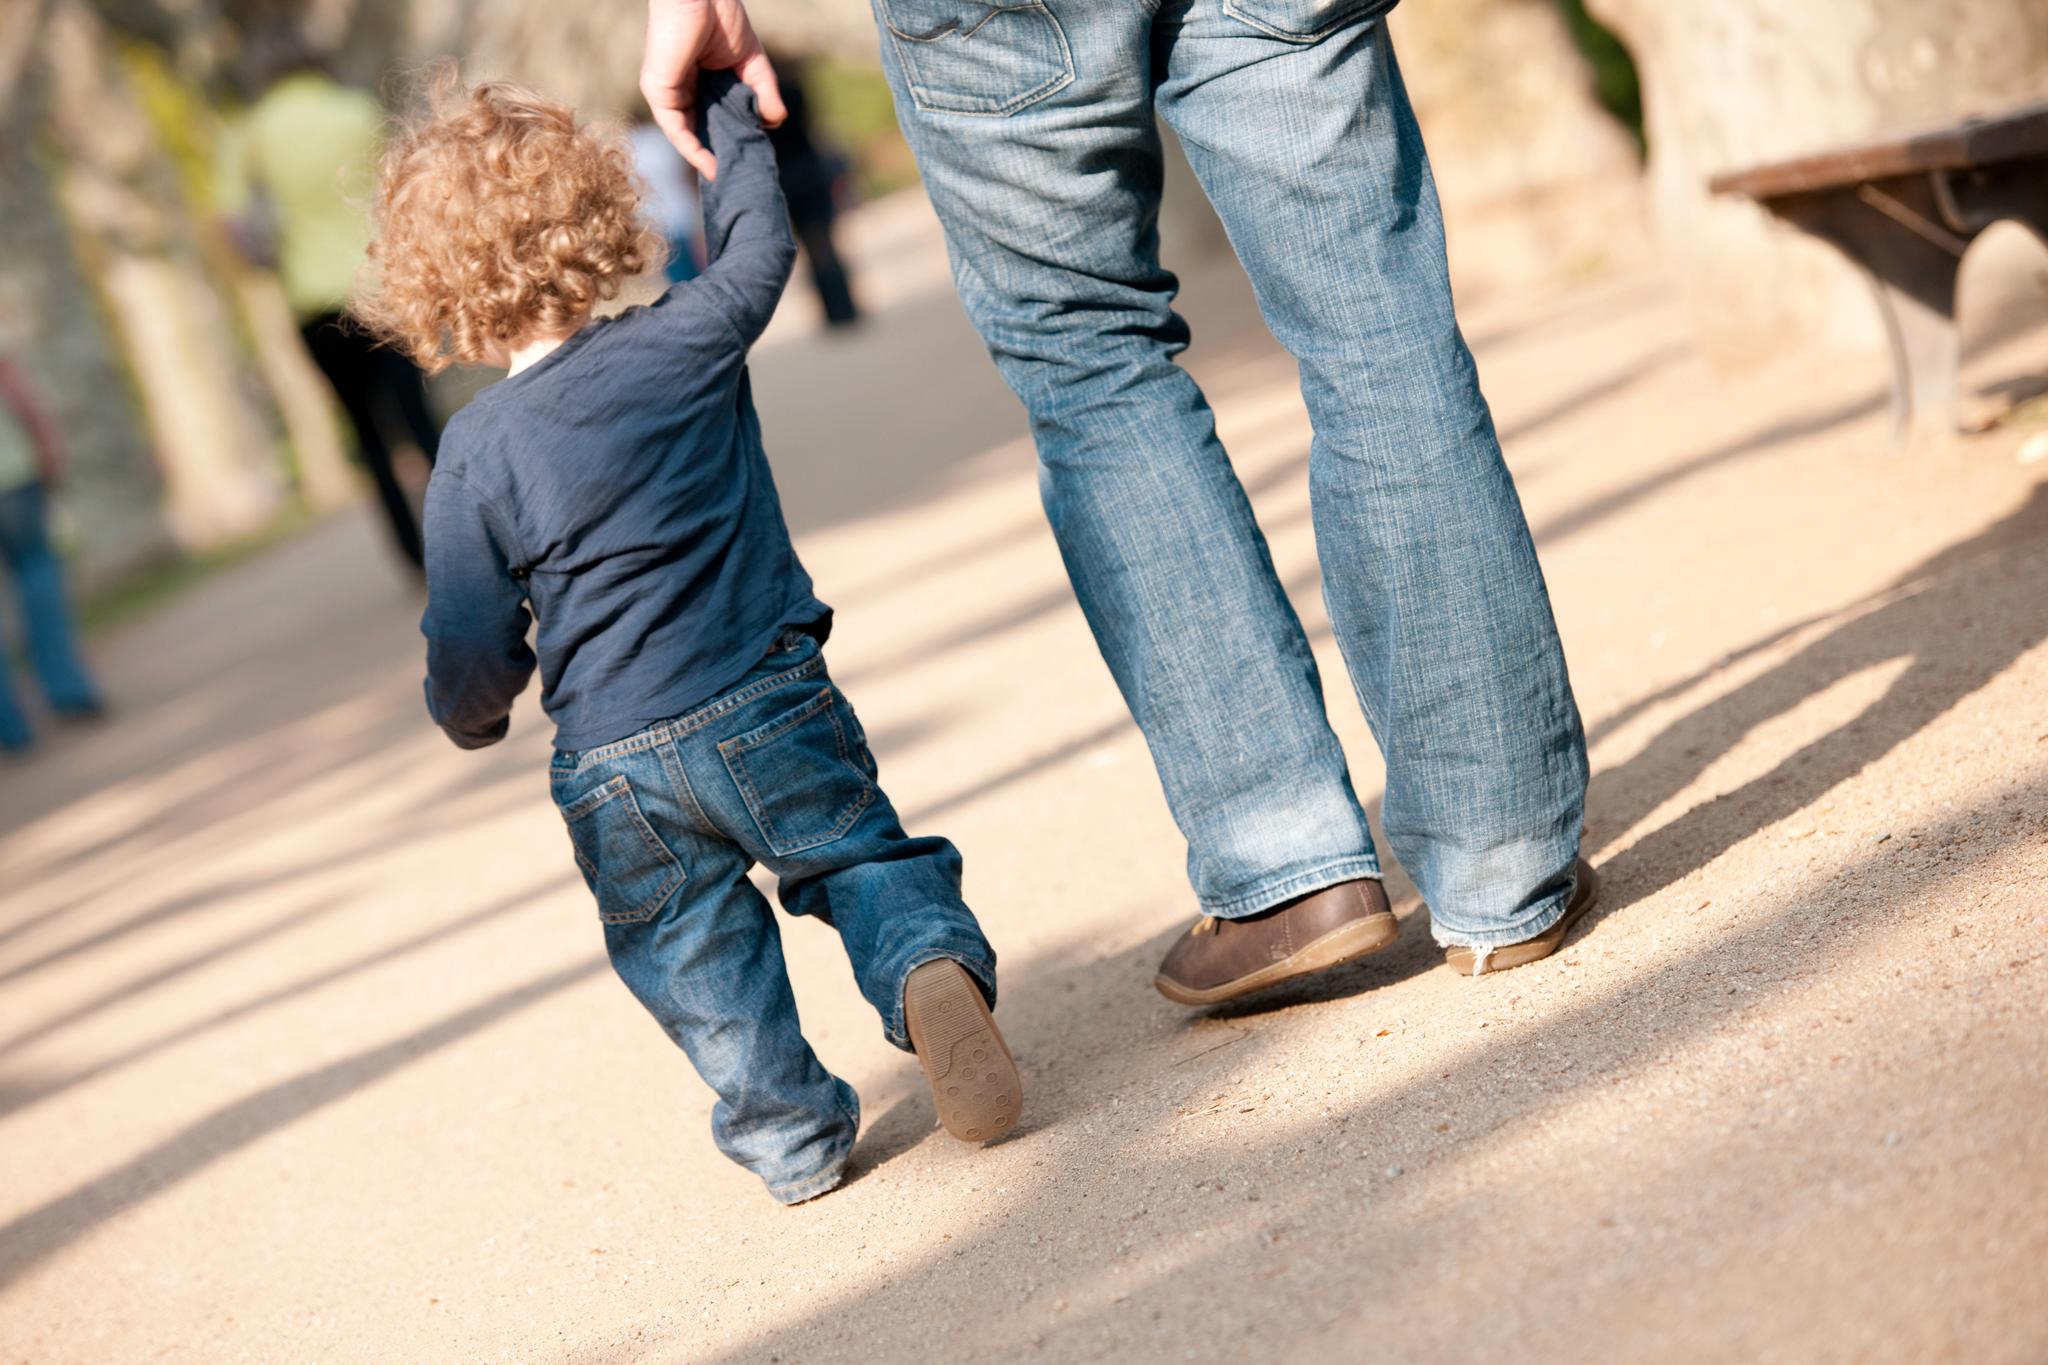 Lang foreldrepermisjon for fedre er bra for relasjonen mellom barnet og far. Og det er bra for likestillingen at far er omsorgsperson hjemme, understreker forskerne.